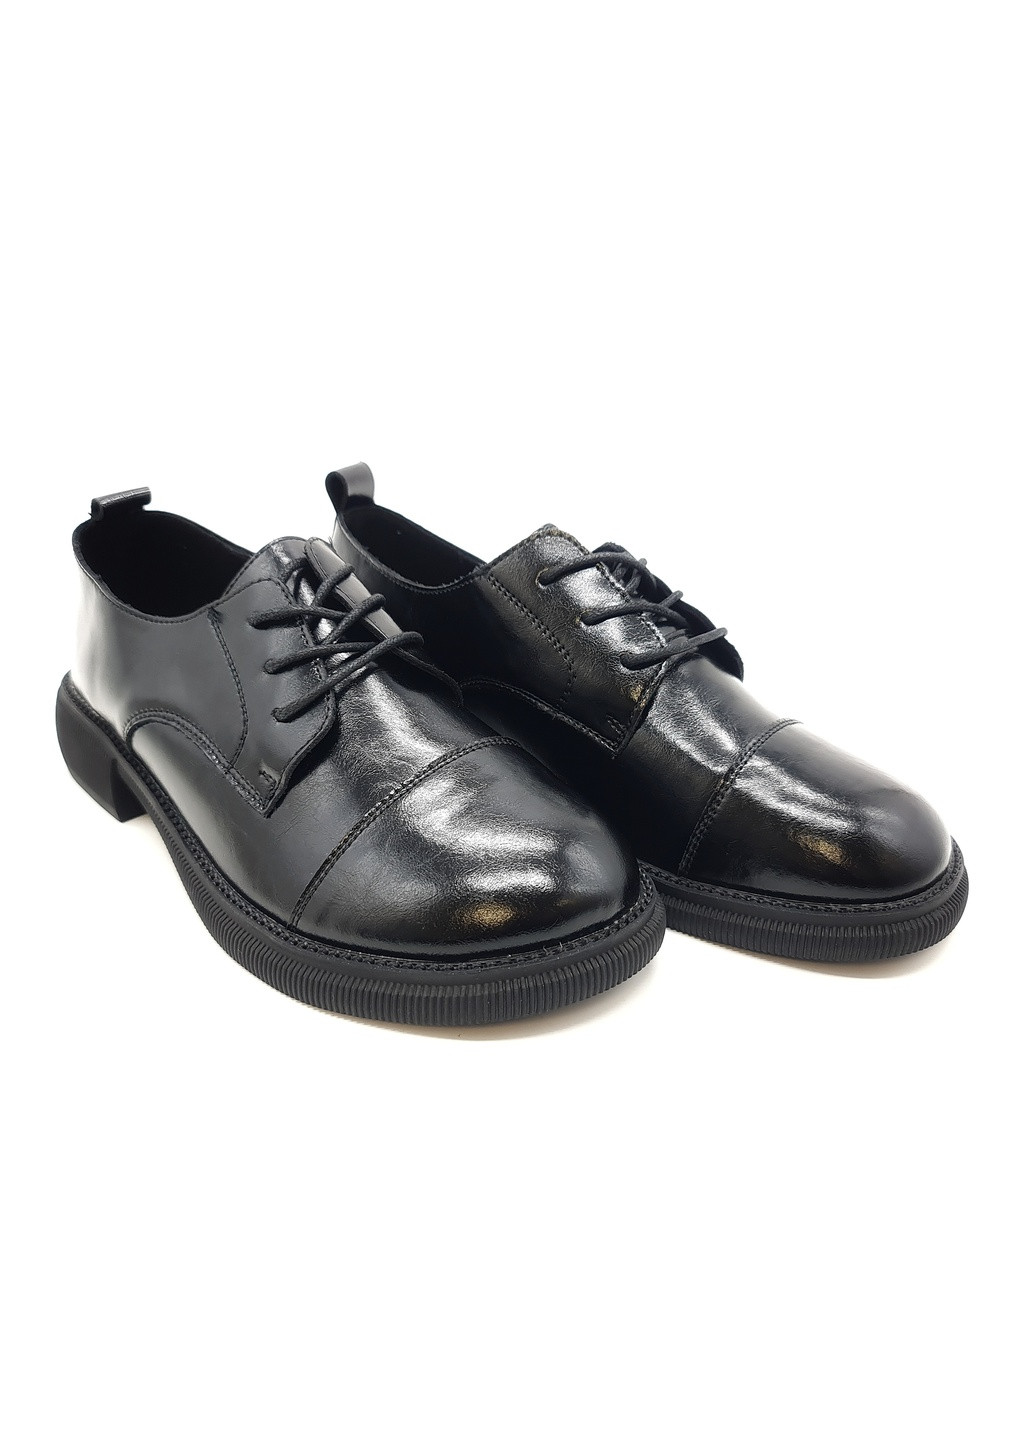 Жіночі туфлі чорні шкіряні YA-16-1 23,5 см (р) Yalasou (259299686)